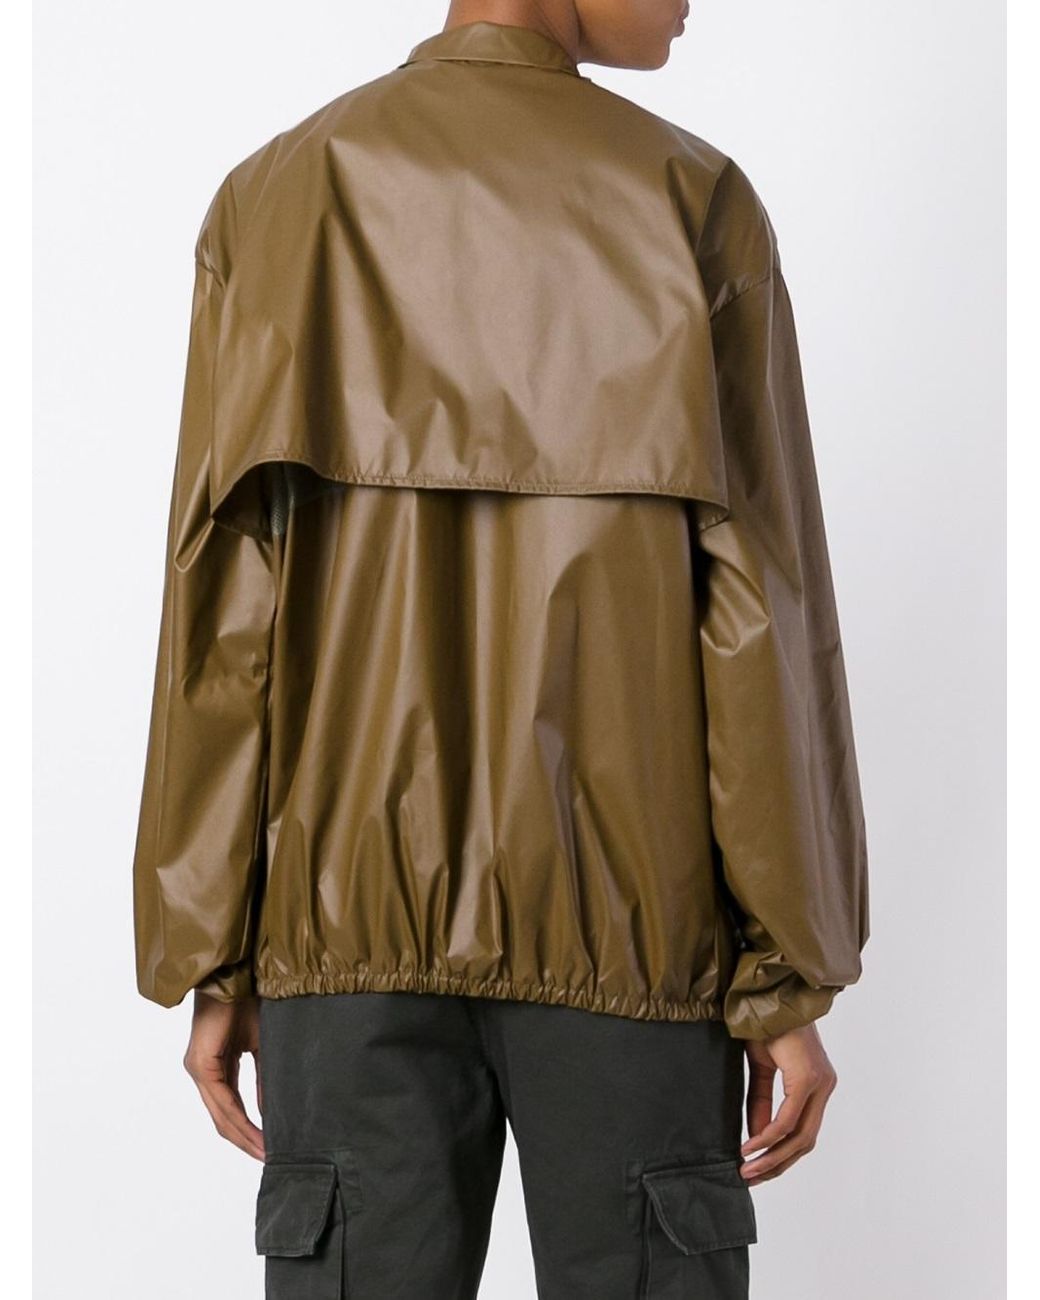 Yeezy Season 3 Windbreaker Jacket in Brown | Lyst